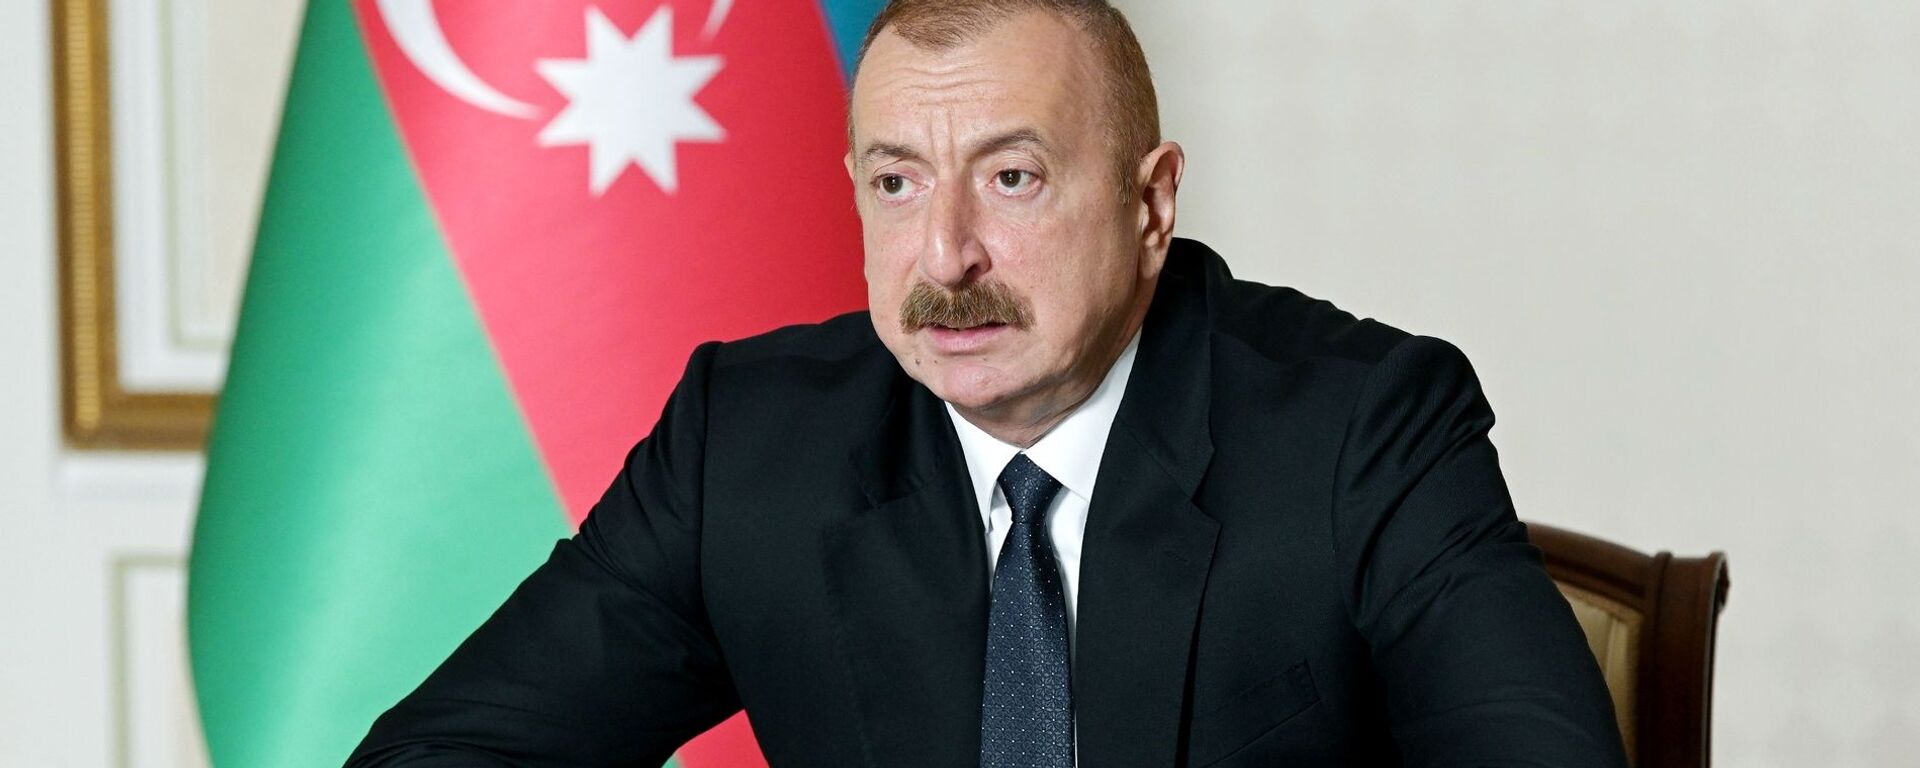 Ilham Aliev, presidente do Azerbaijão, durante reunião em torno da guerra de Nagorno-Karabakh - Sputnik Brasil, 1920, 06.10.2022